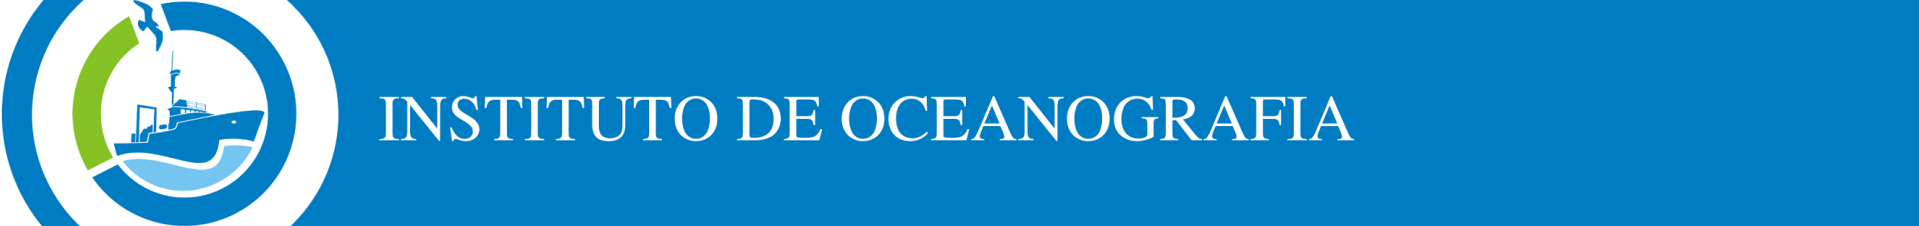 Instituto de Oceanografia